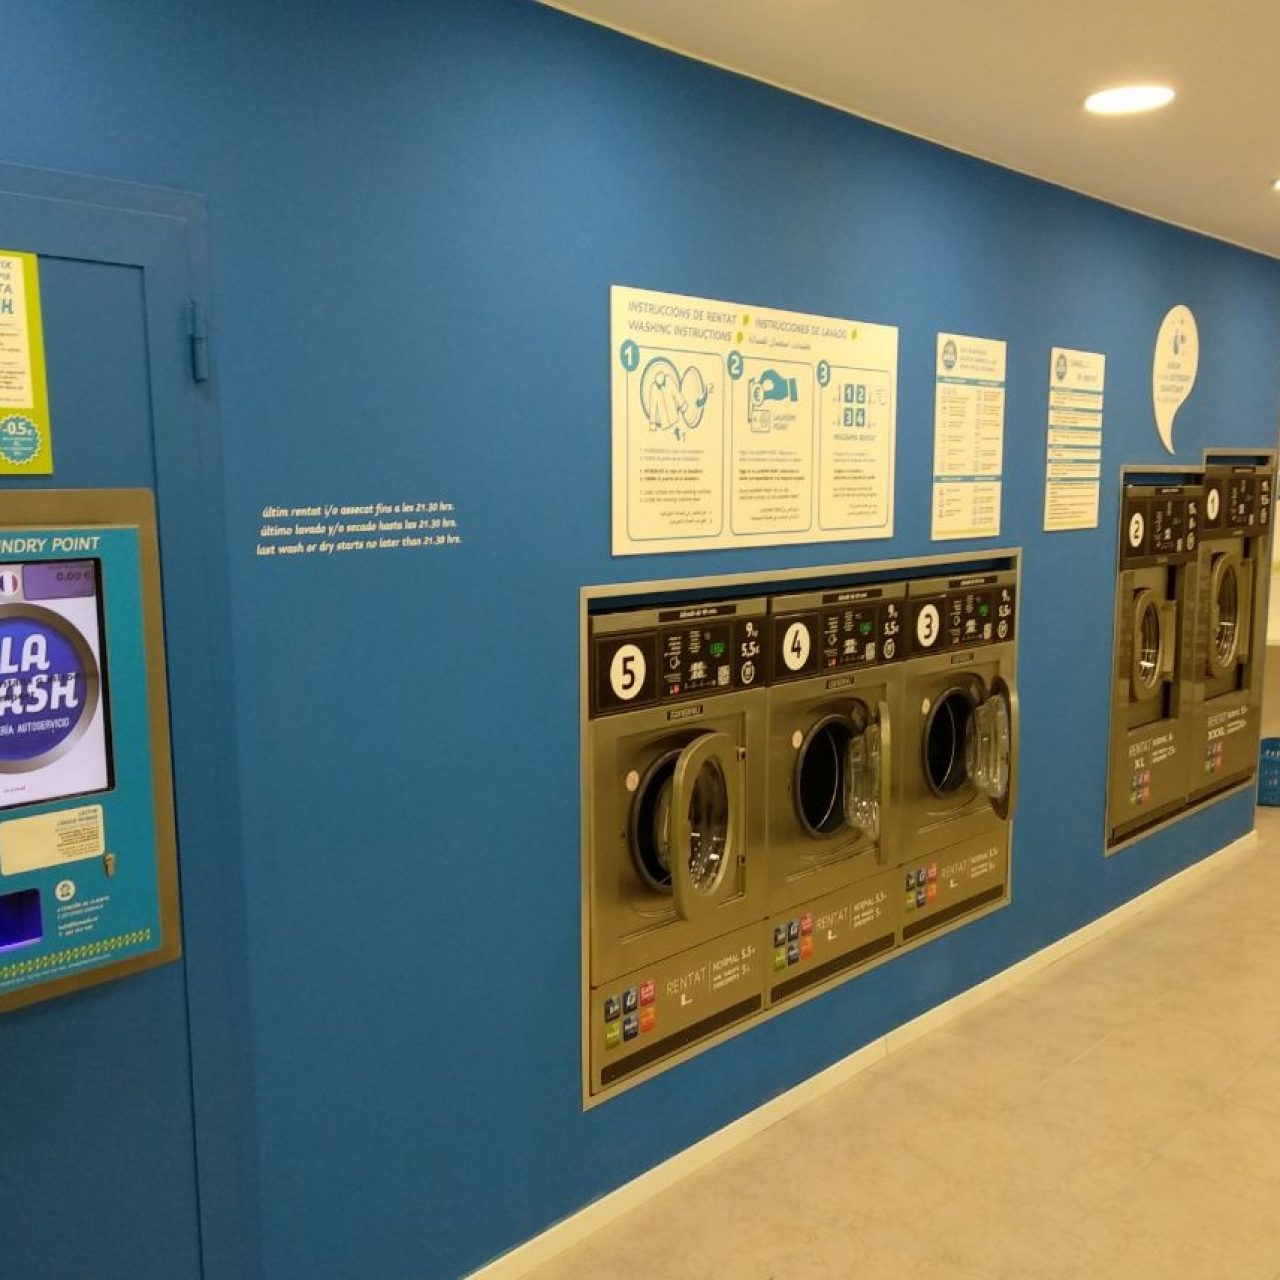 Las lavanderías autoservicio continúan abiertas durante el estado de alarma